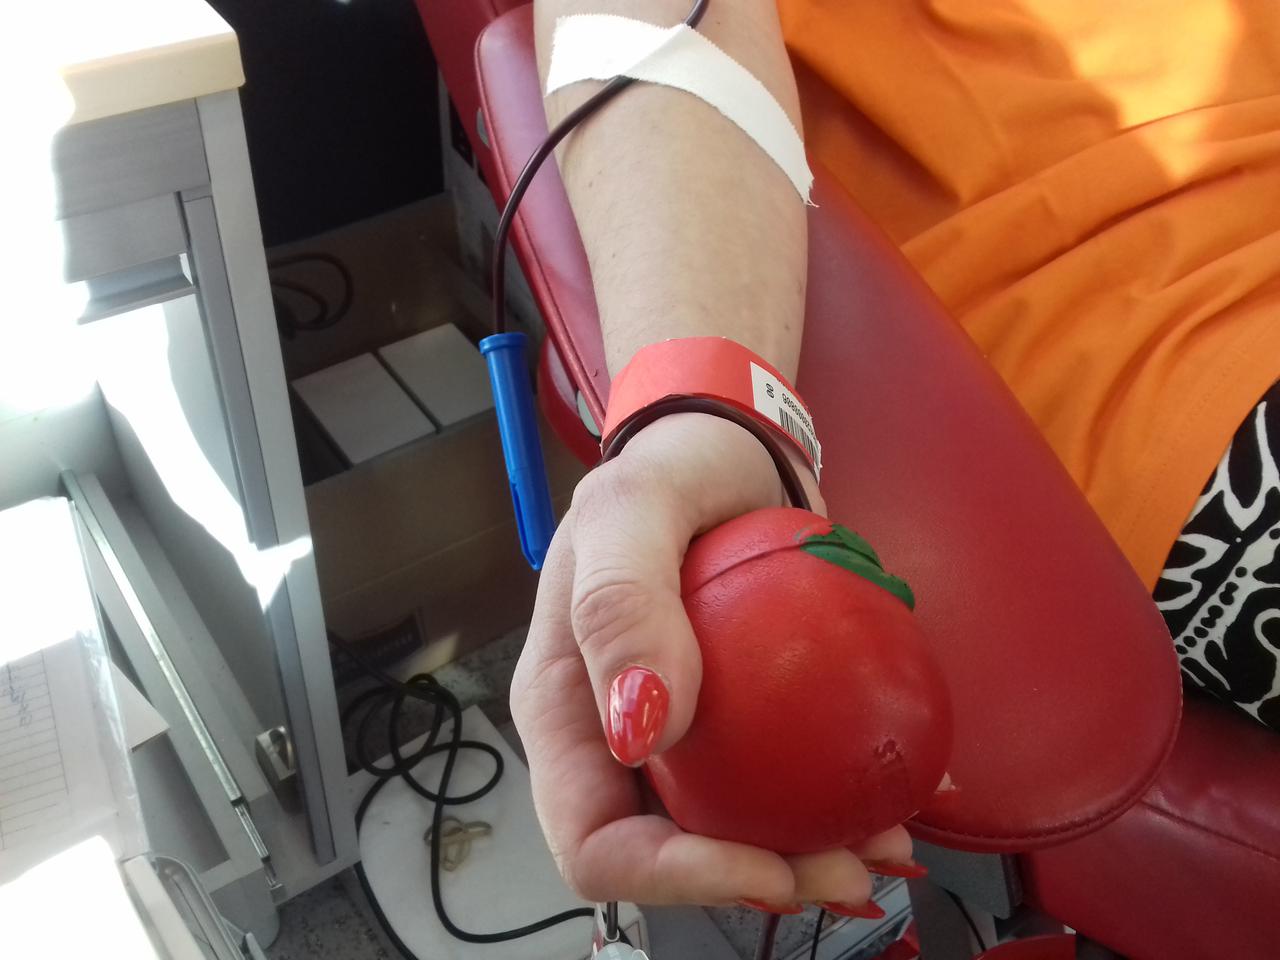 Przyjdź z nowym Krwiodawcą - zachęca ​Regionalne Centrum Krwiodawstwa i Krwiolecznictwa w Kielcach. Nowa akcja dla dawców!